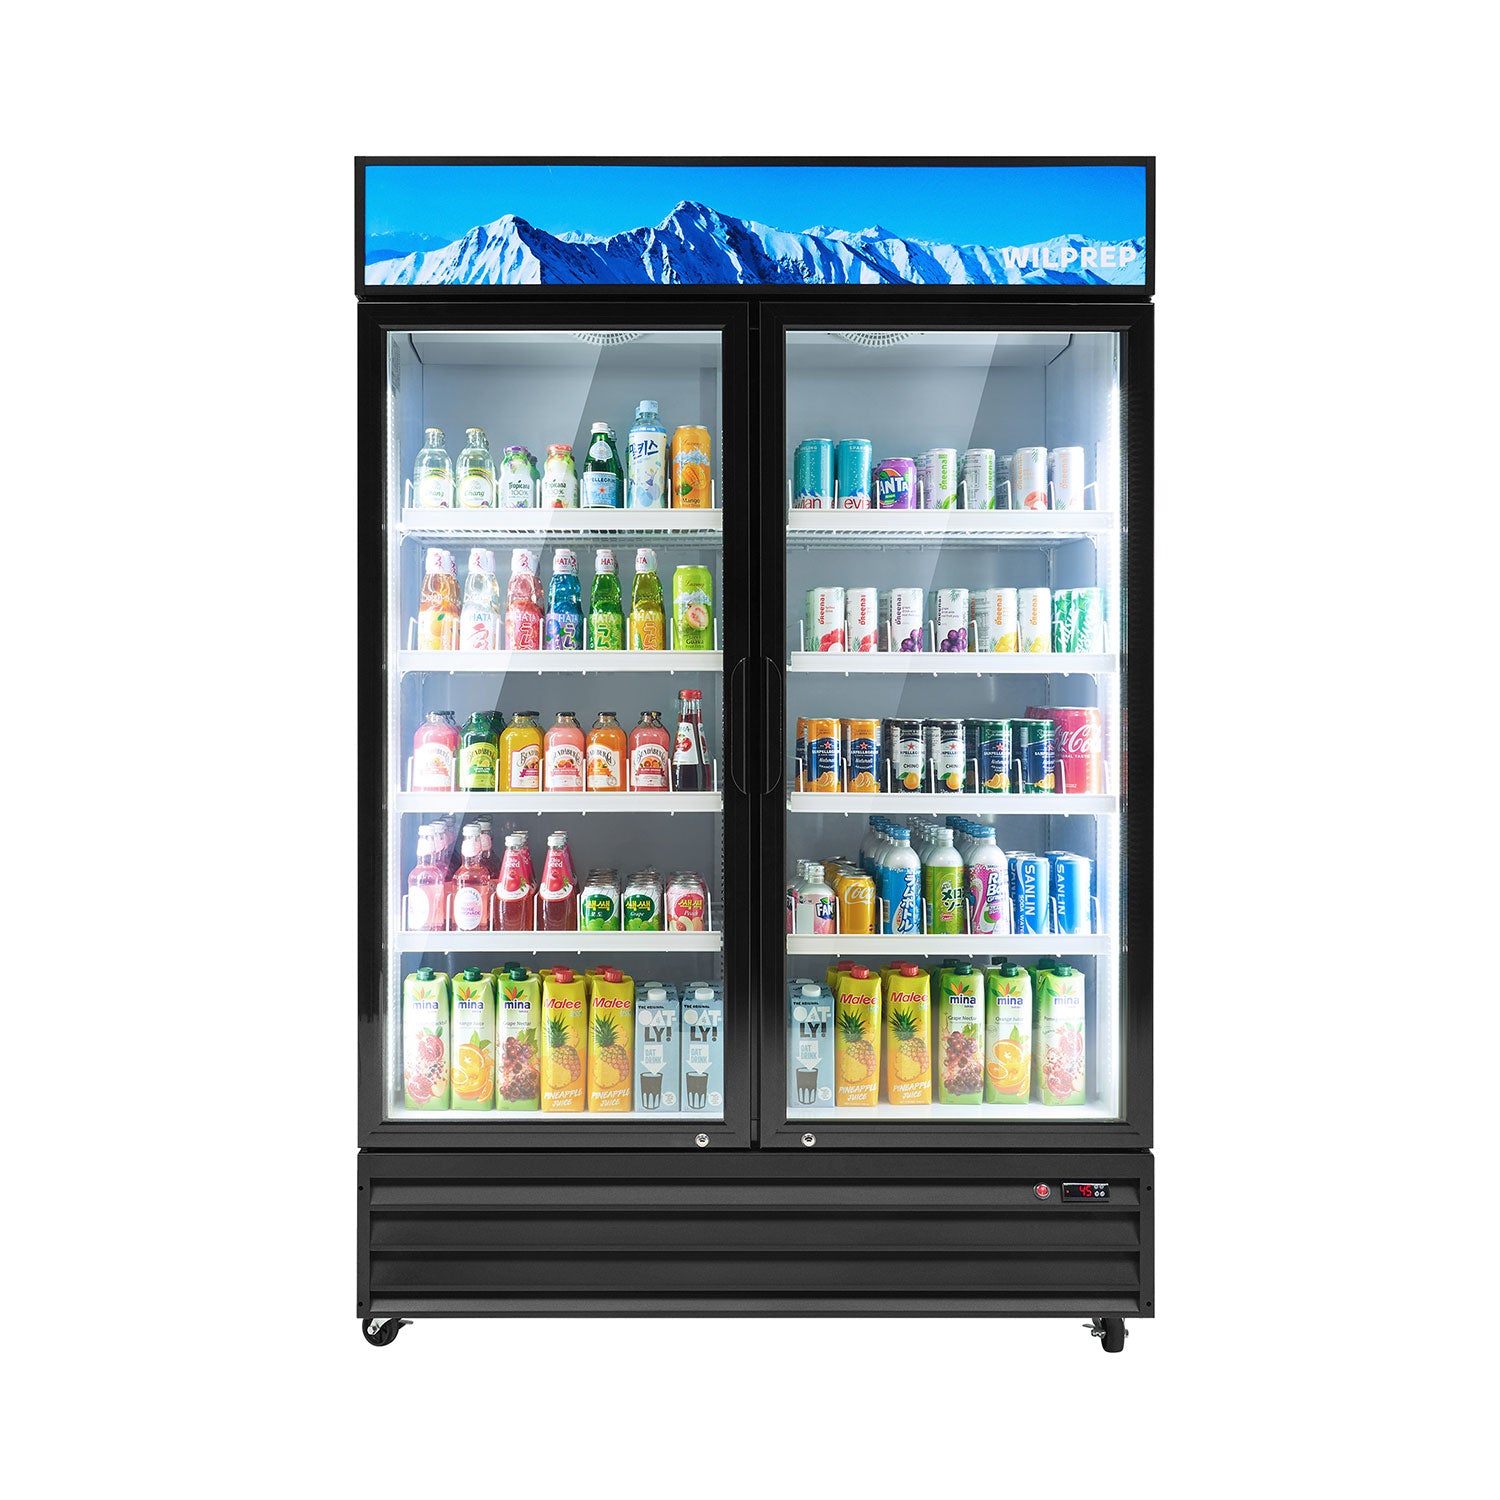 Wilprep 2-door Commercial Refrigerator for Sale